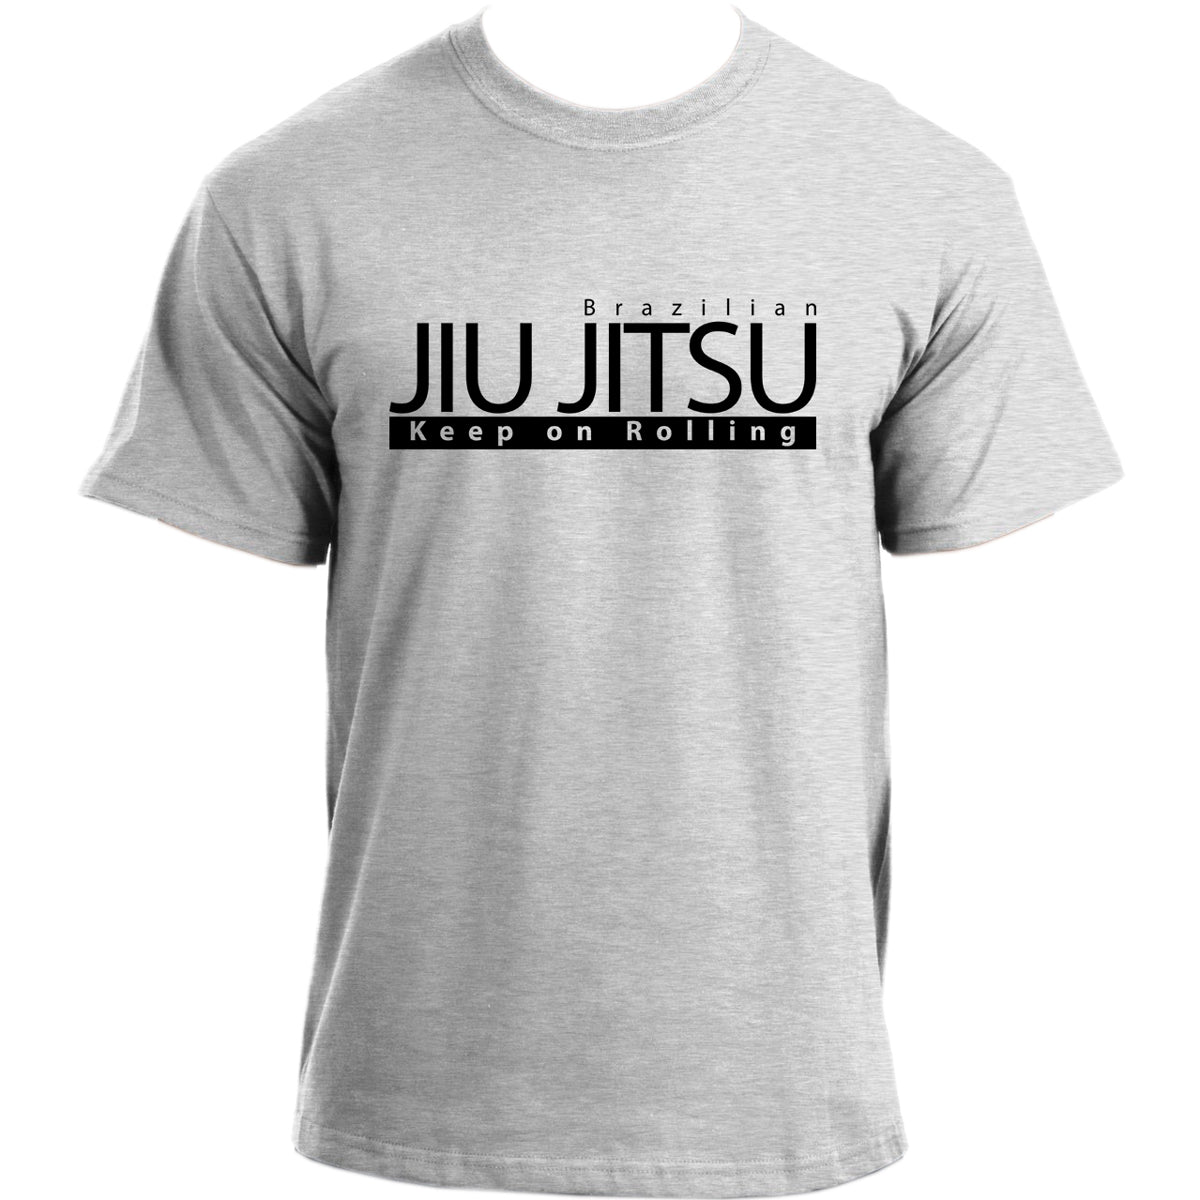 Jiu Jitsu Keep on Rolling T-Shirt I Brazilian Jiu Jitsu T Shirt I Jiu-Jitsu Sports MMA BJJ tshirt